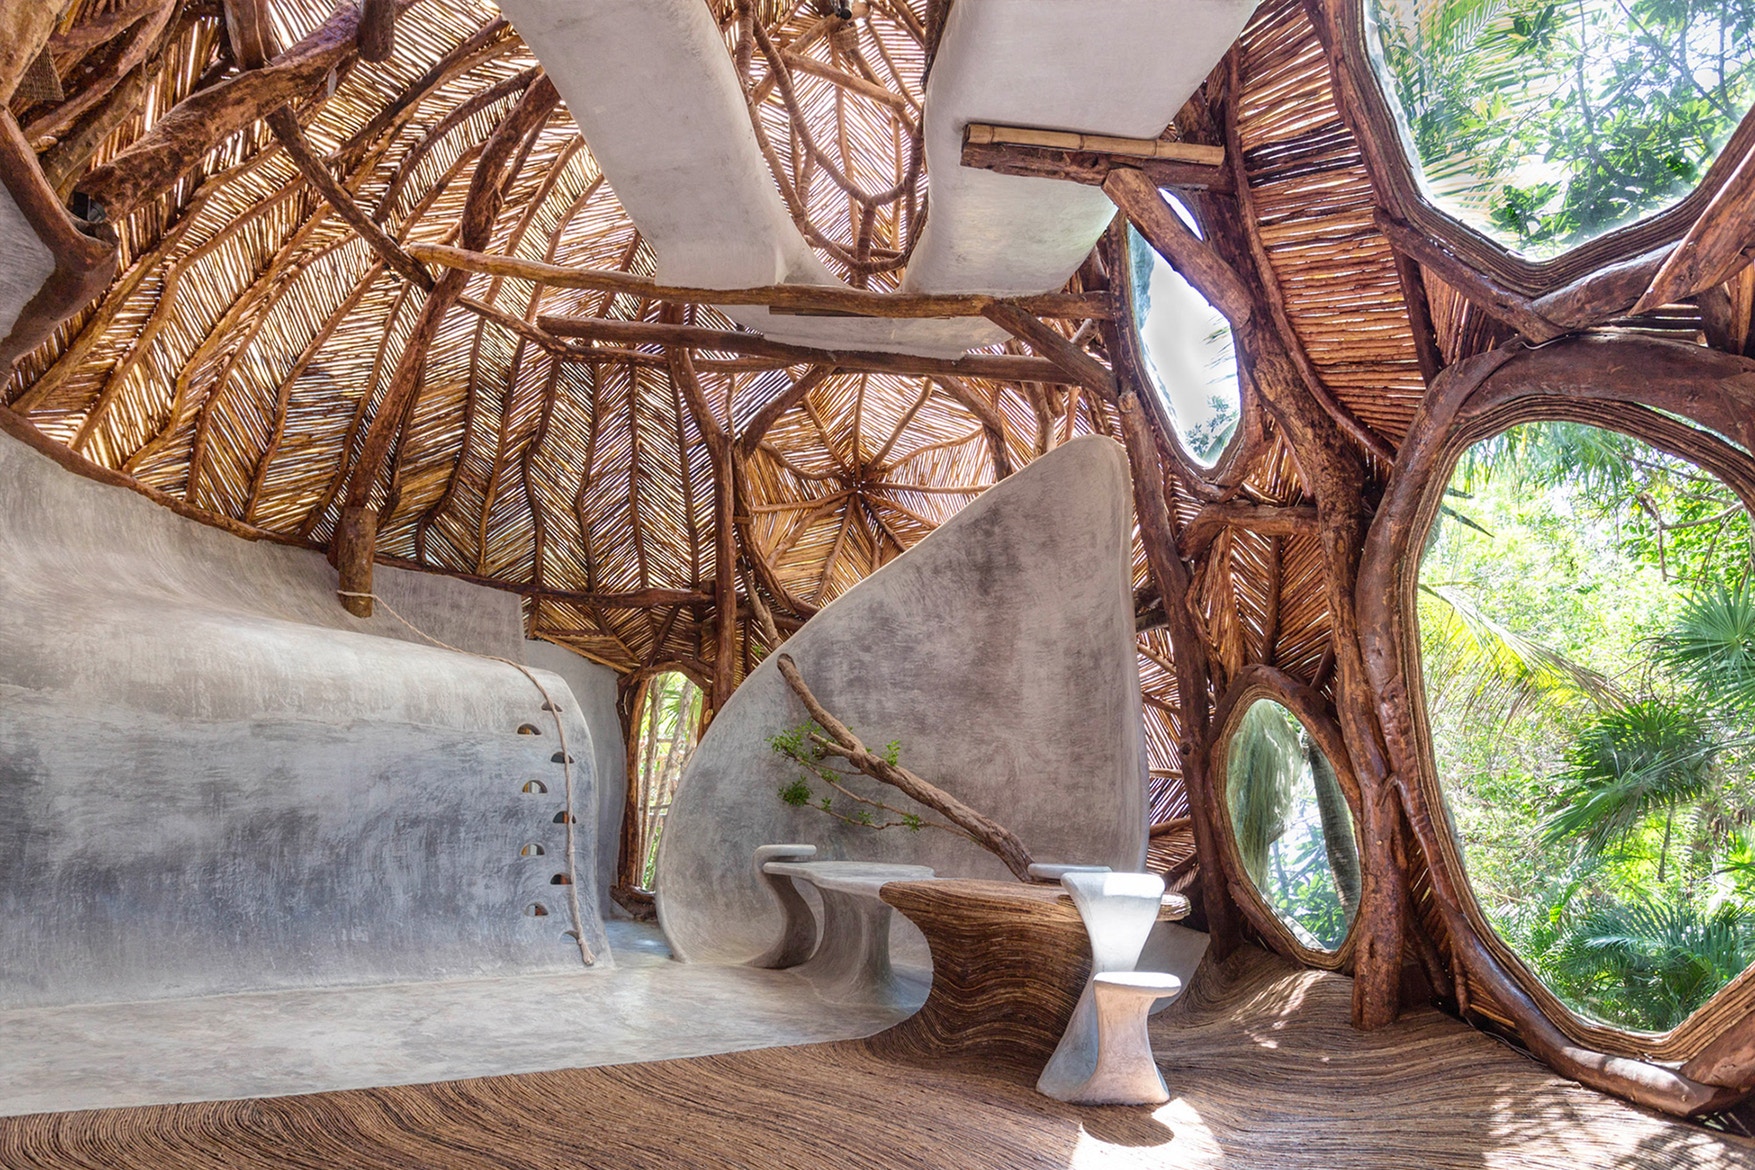 Правнук Пегги Гуггенхайм открыл арт-галерею, похожую на шикарный дом в дереве (фото 3)